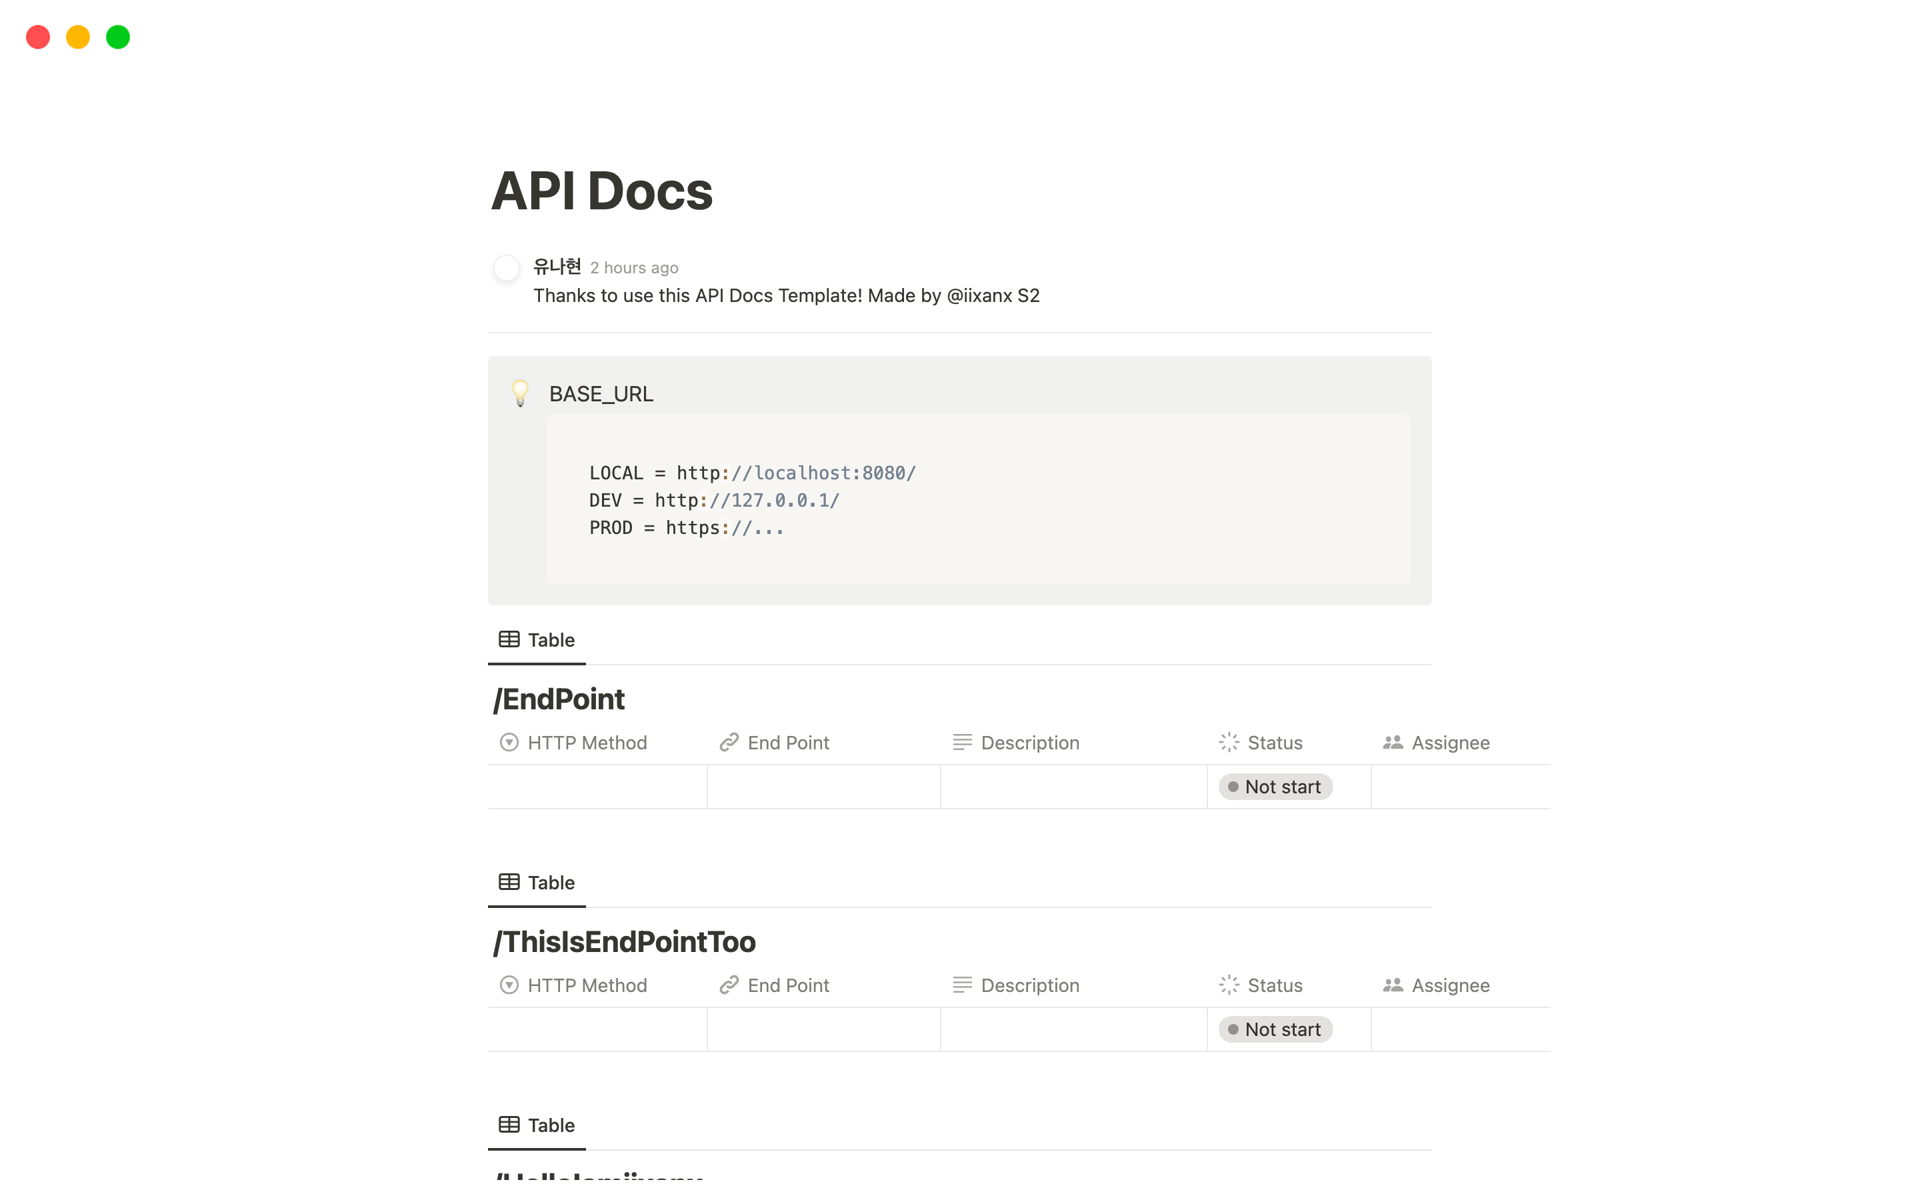 Vista previa de plantilla para API Docs